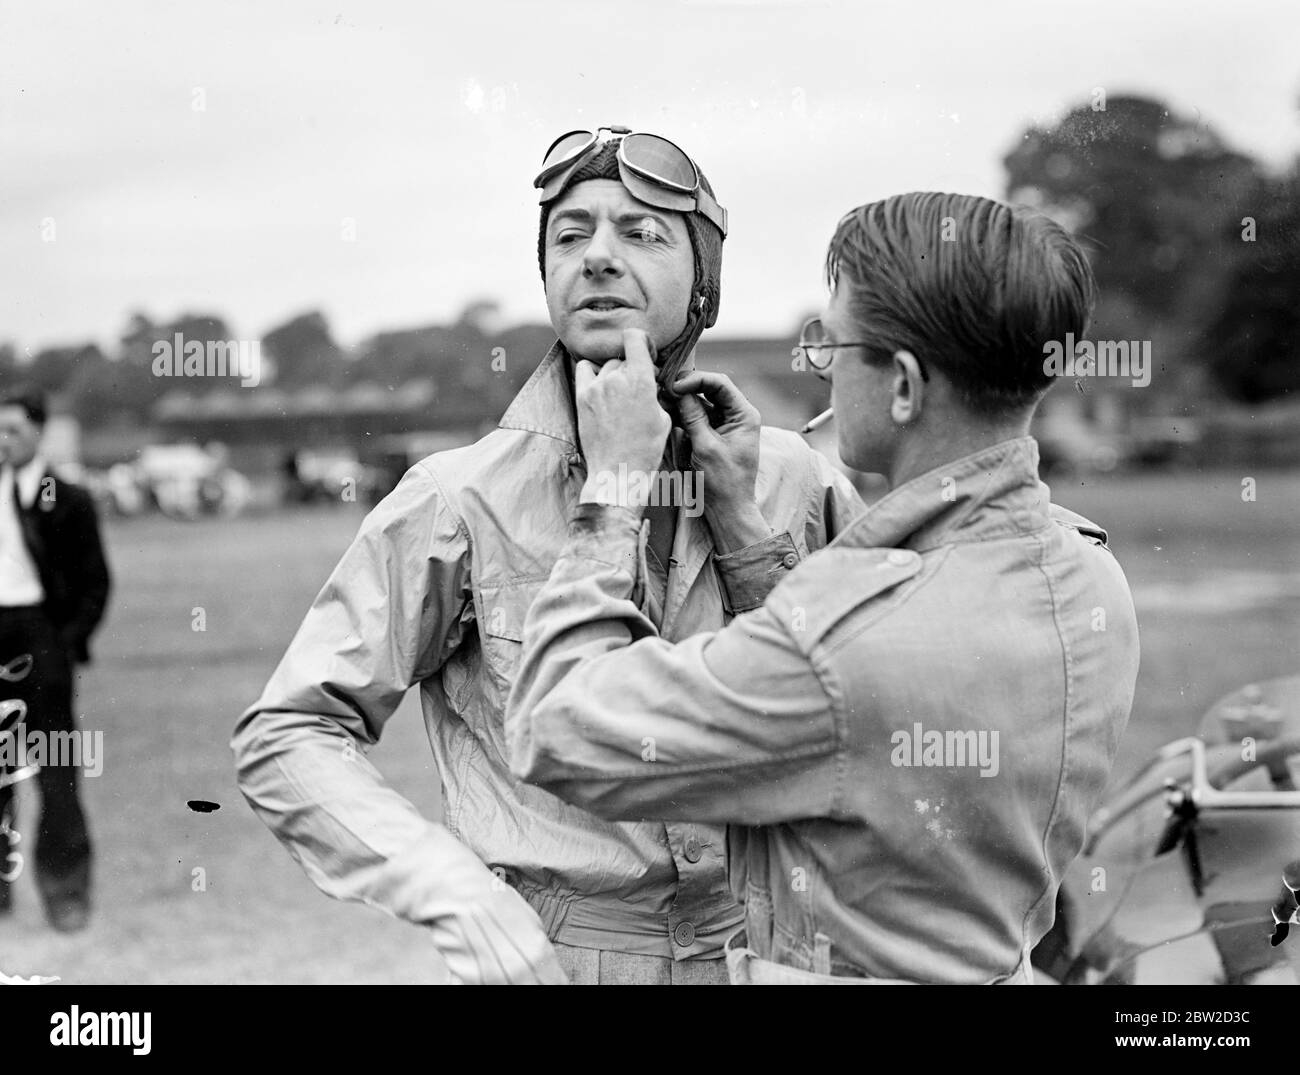 Raymond Mays bereitet sich auf ein Rennen vor. 29 Juni 1939 Stockfoto